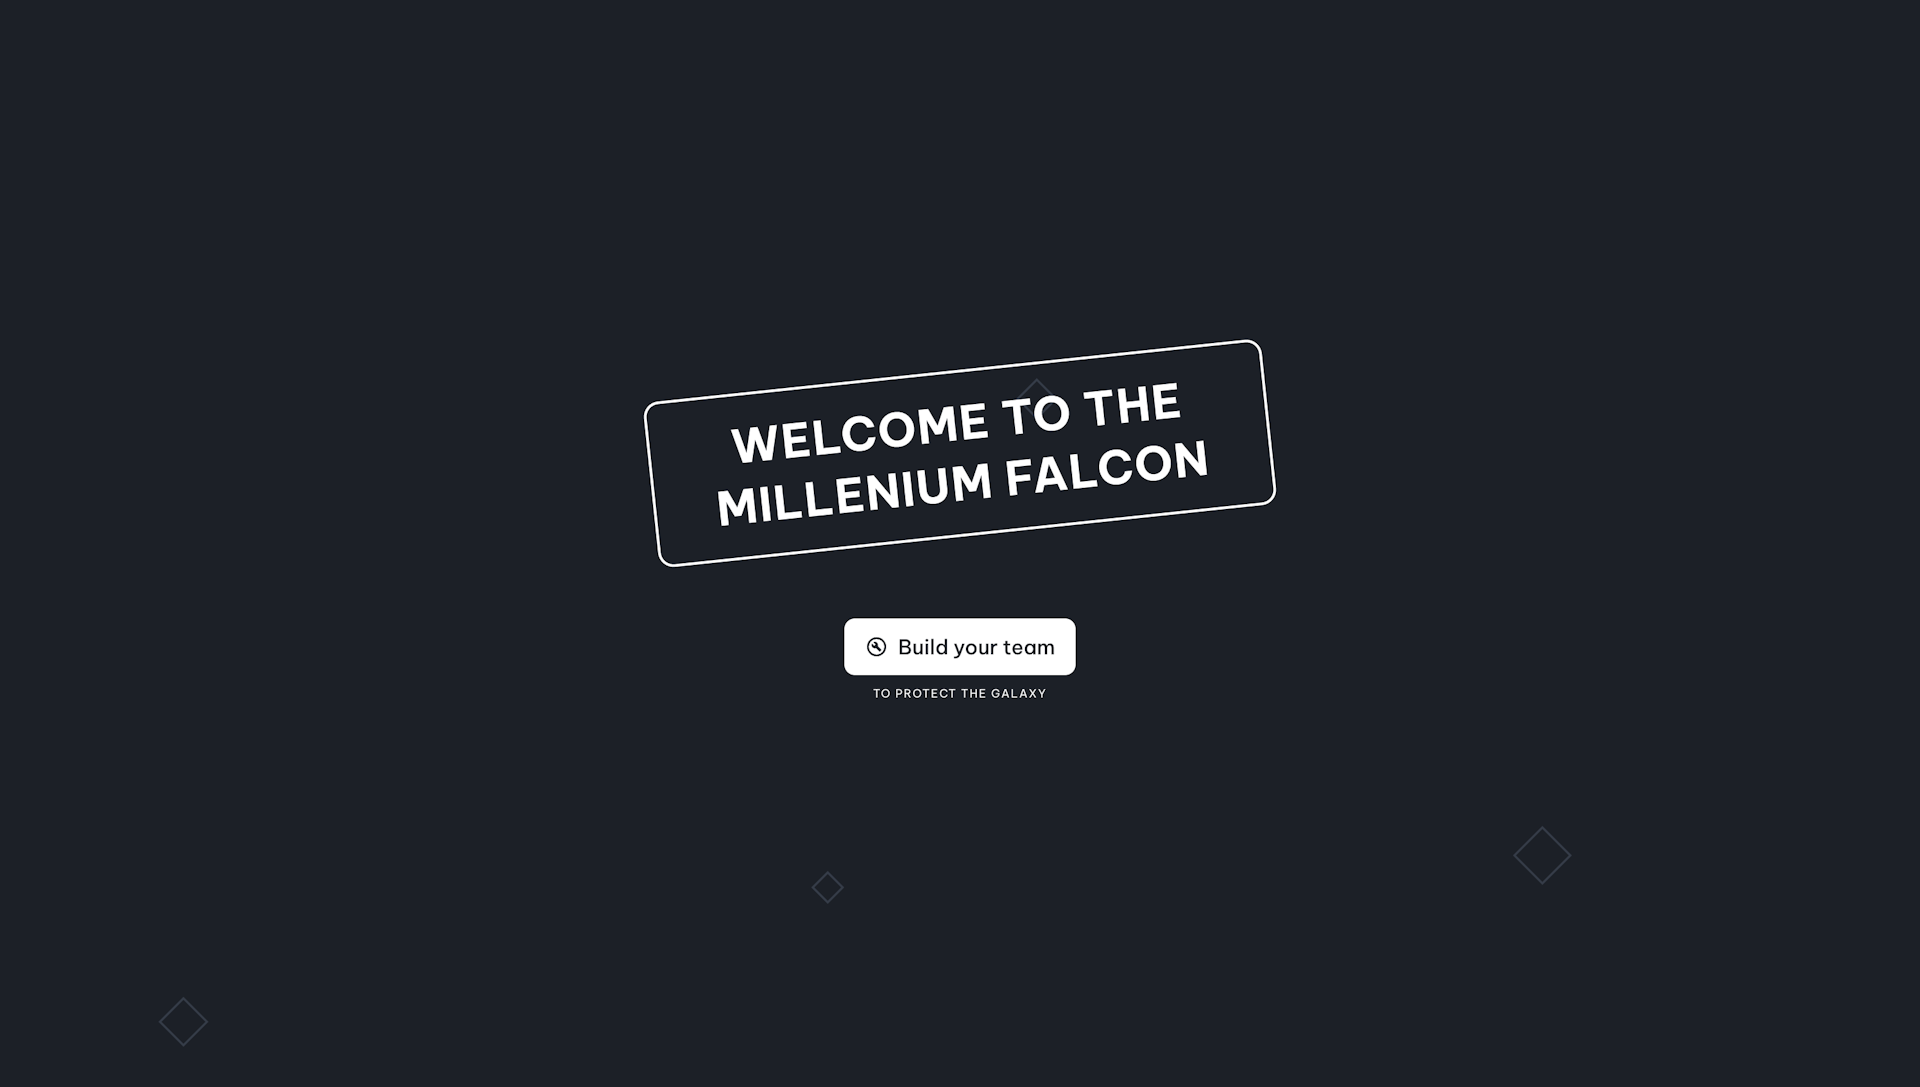 Millenium falcon